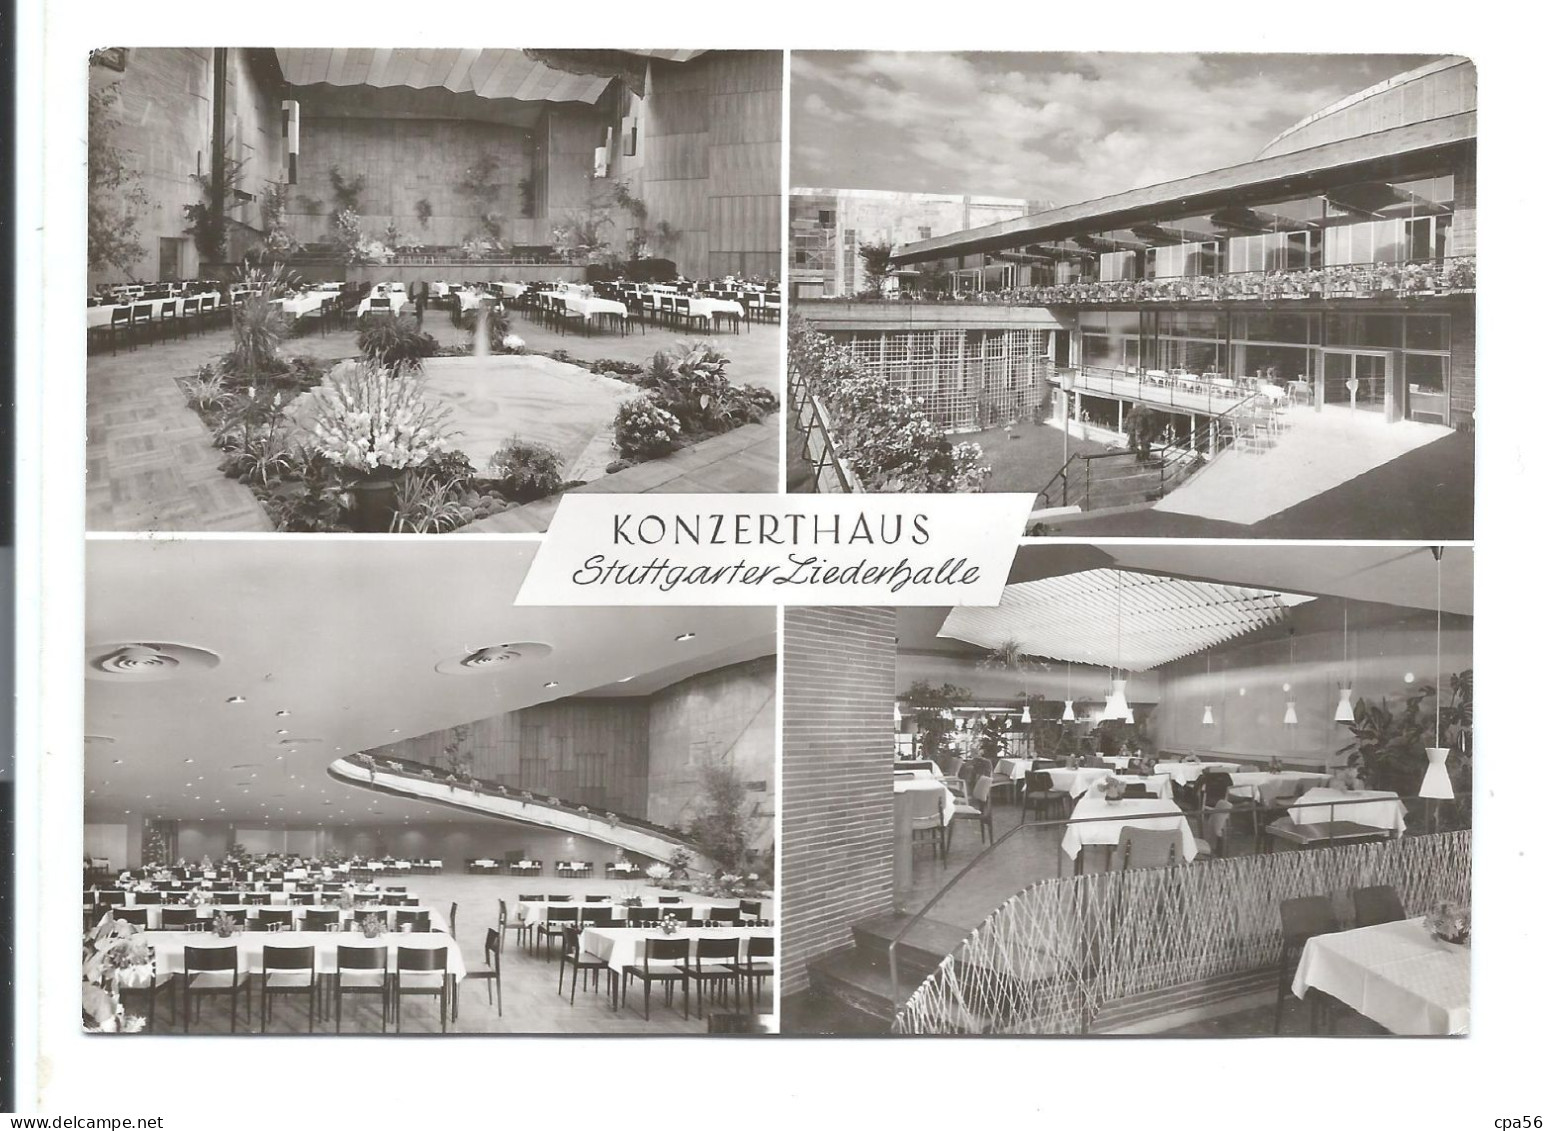 KONZERTHAUS STUTTGARTER LIEDERHALLE - Helmut STAIB N°1031 - Stuttgart